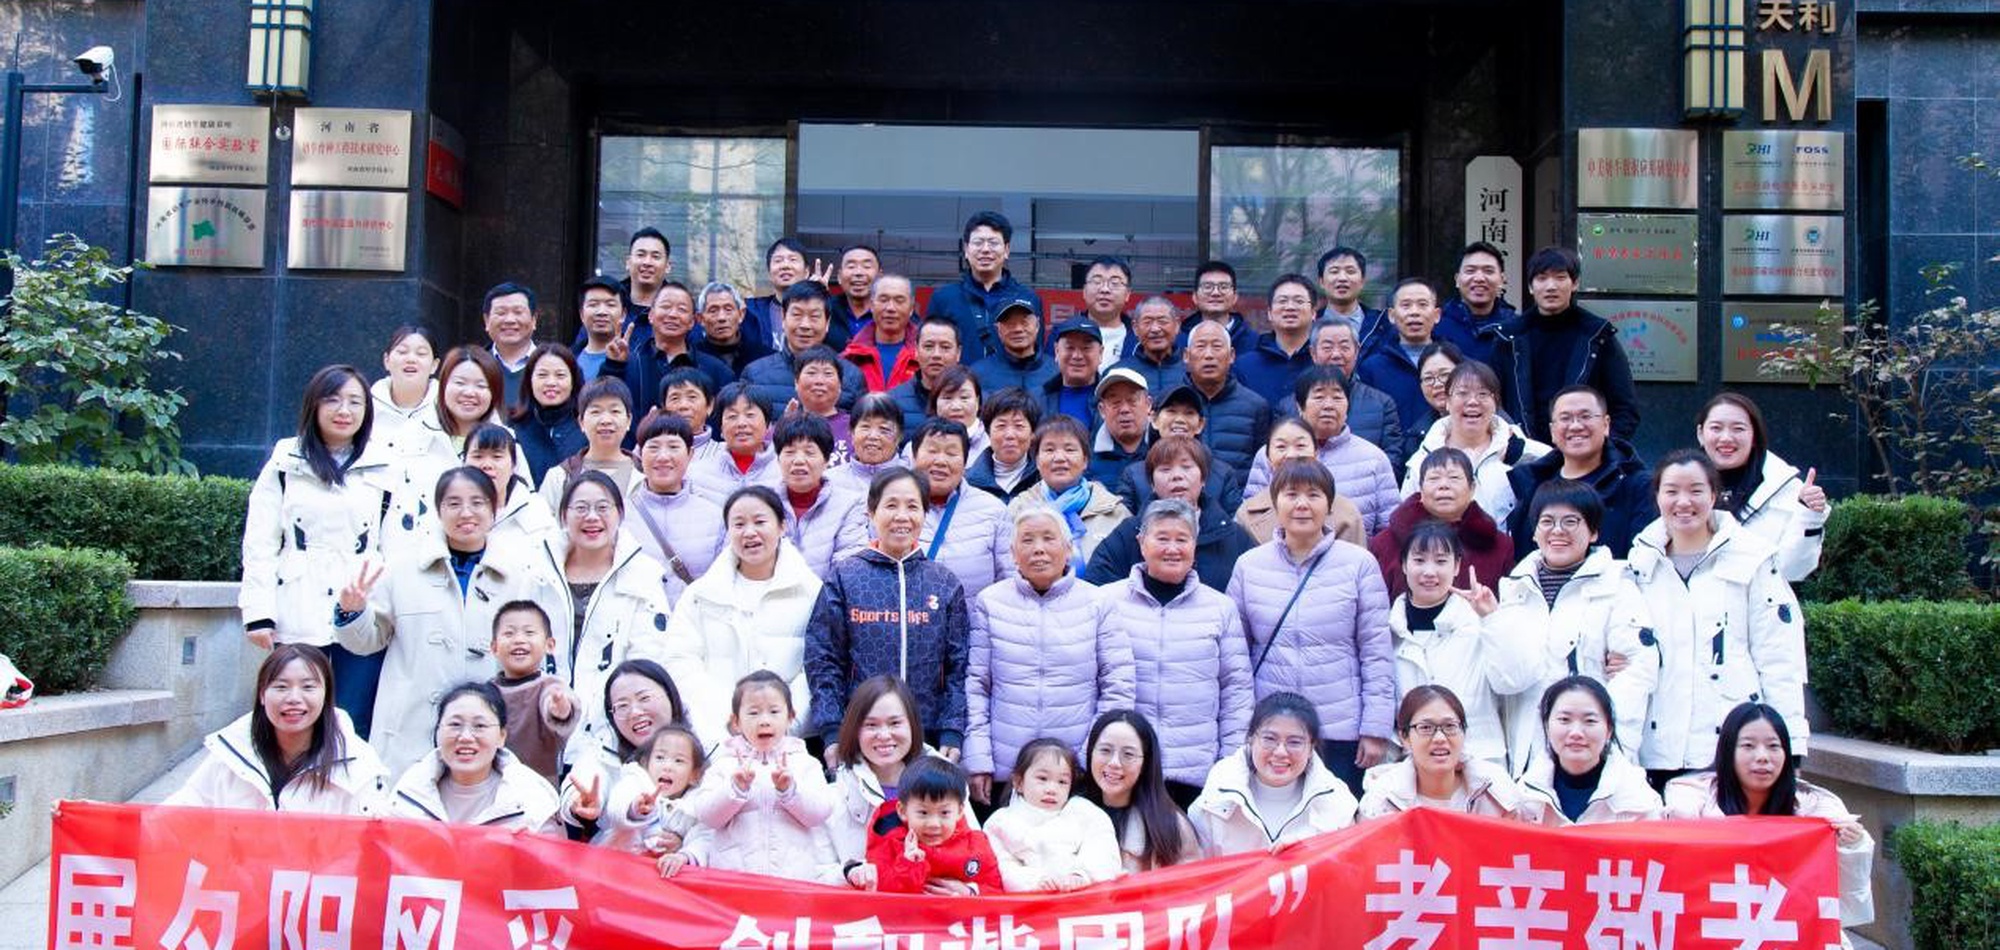 河南DHI举办“展夕阳风采 创和谐团队”尊老敬老主题活动 11.20